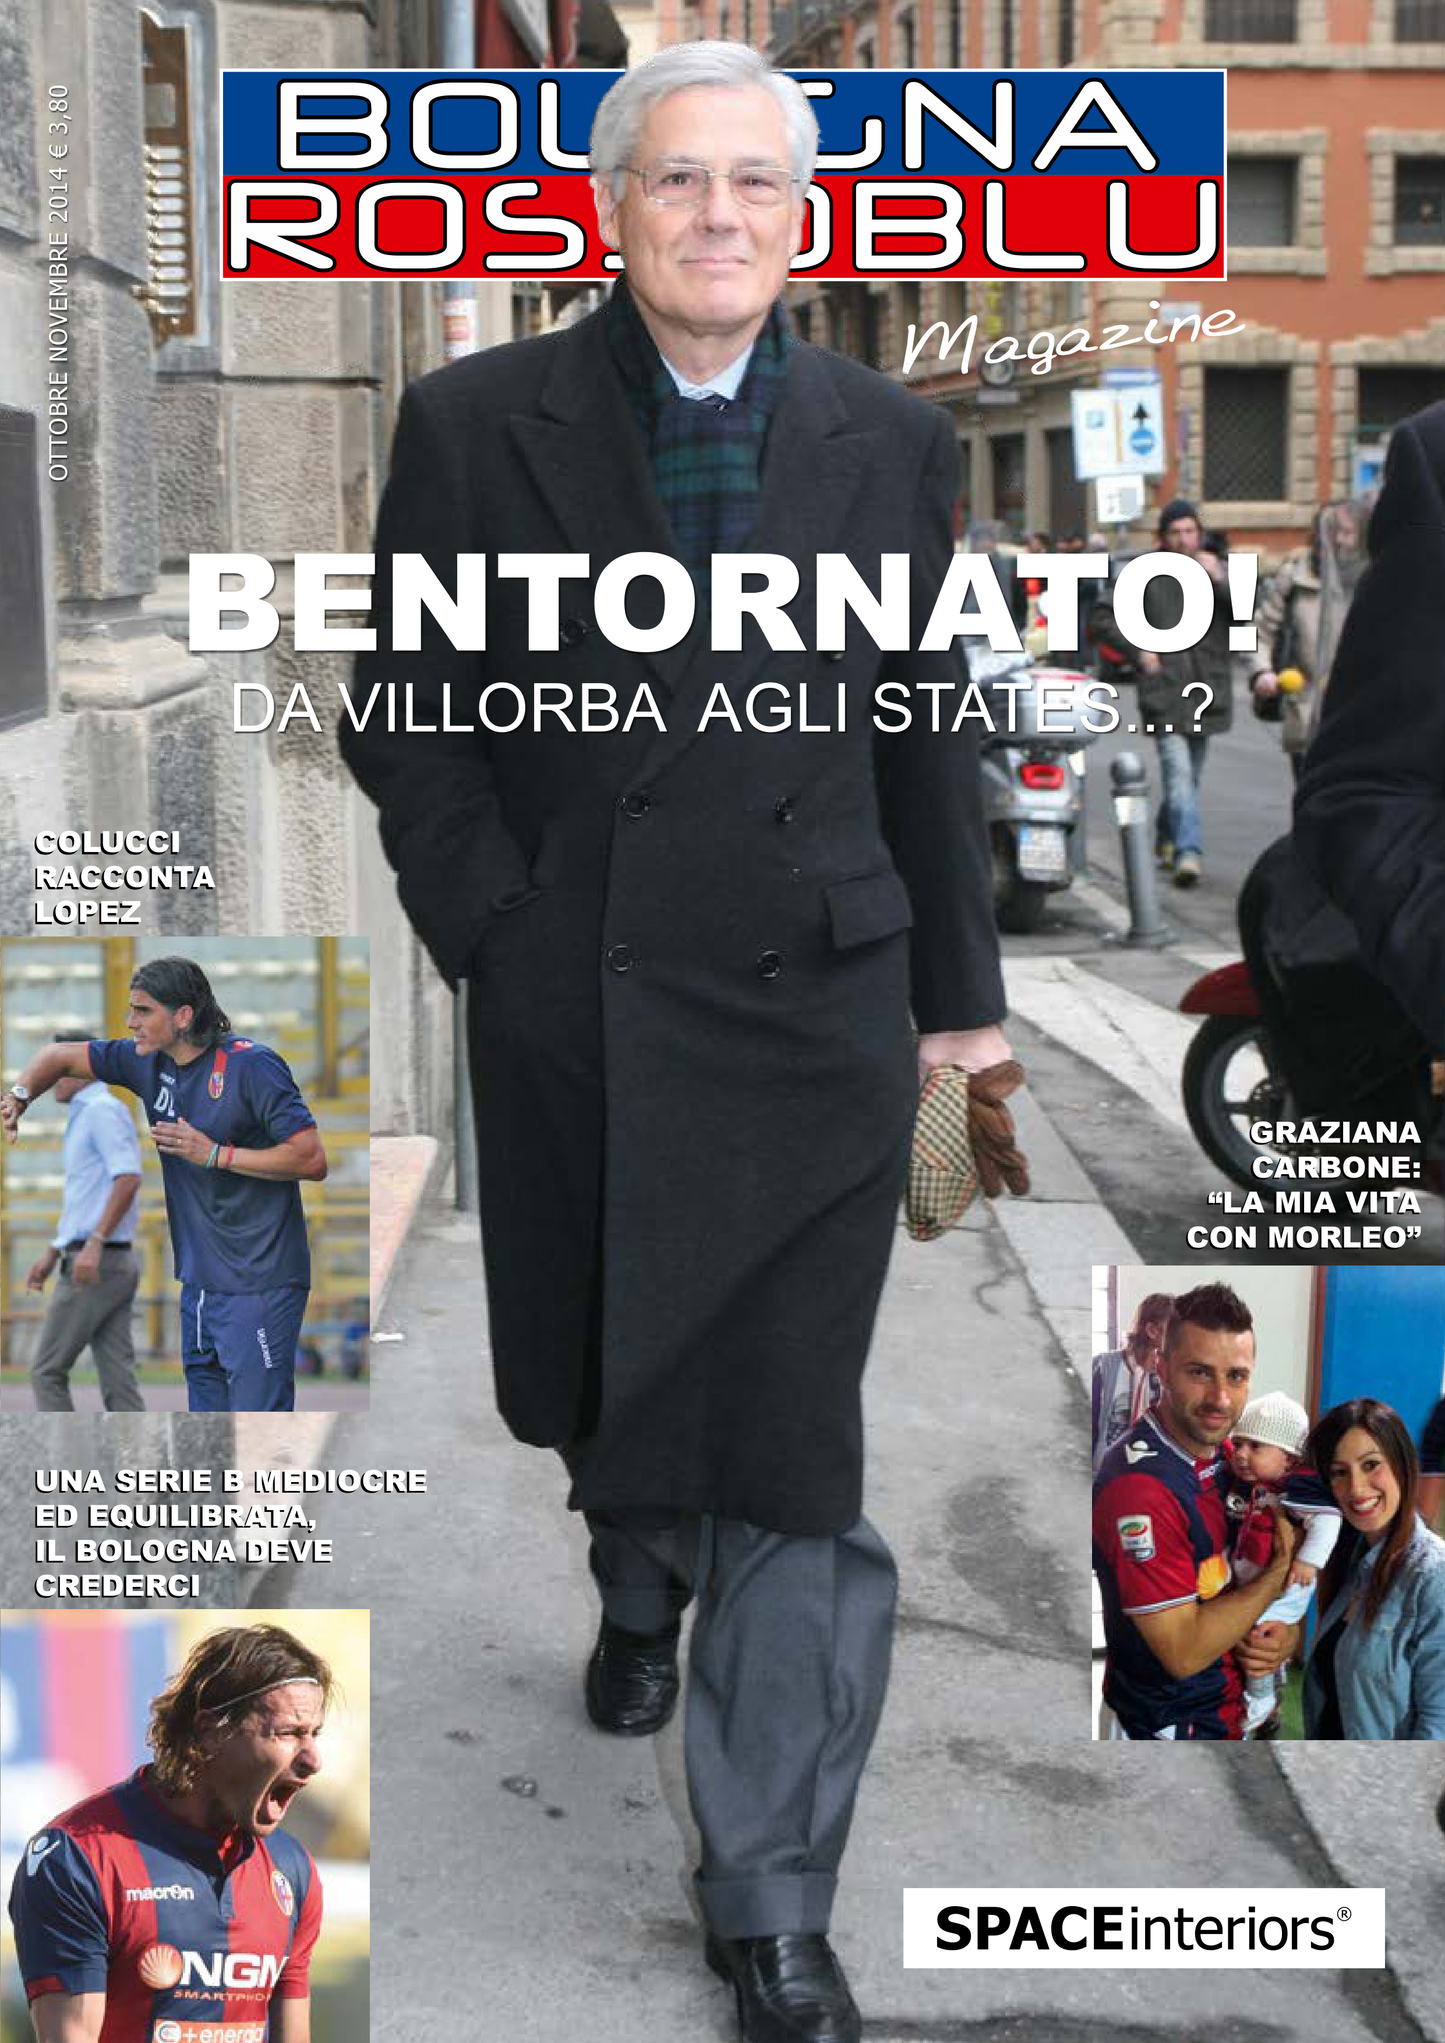 Magazine Bologna Rossoblu n° 18